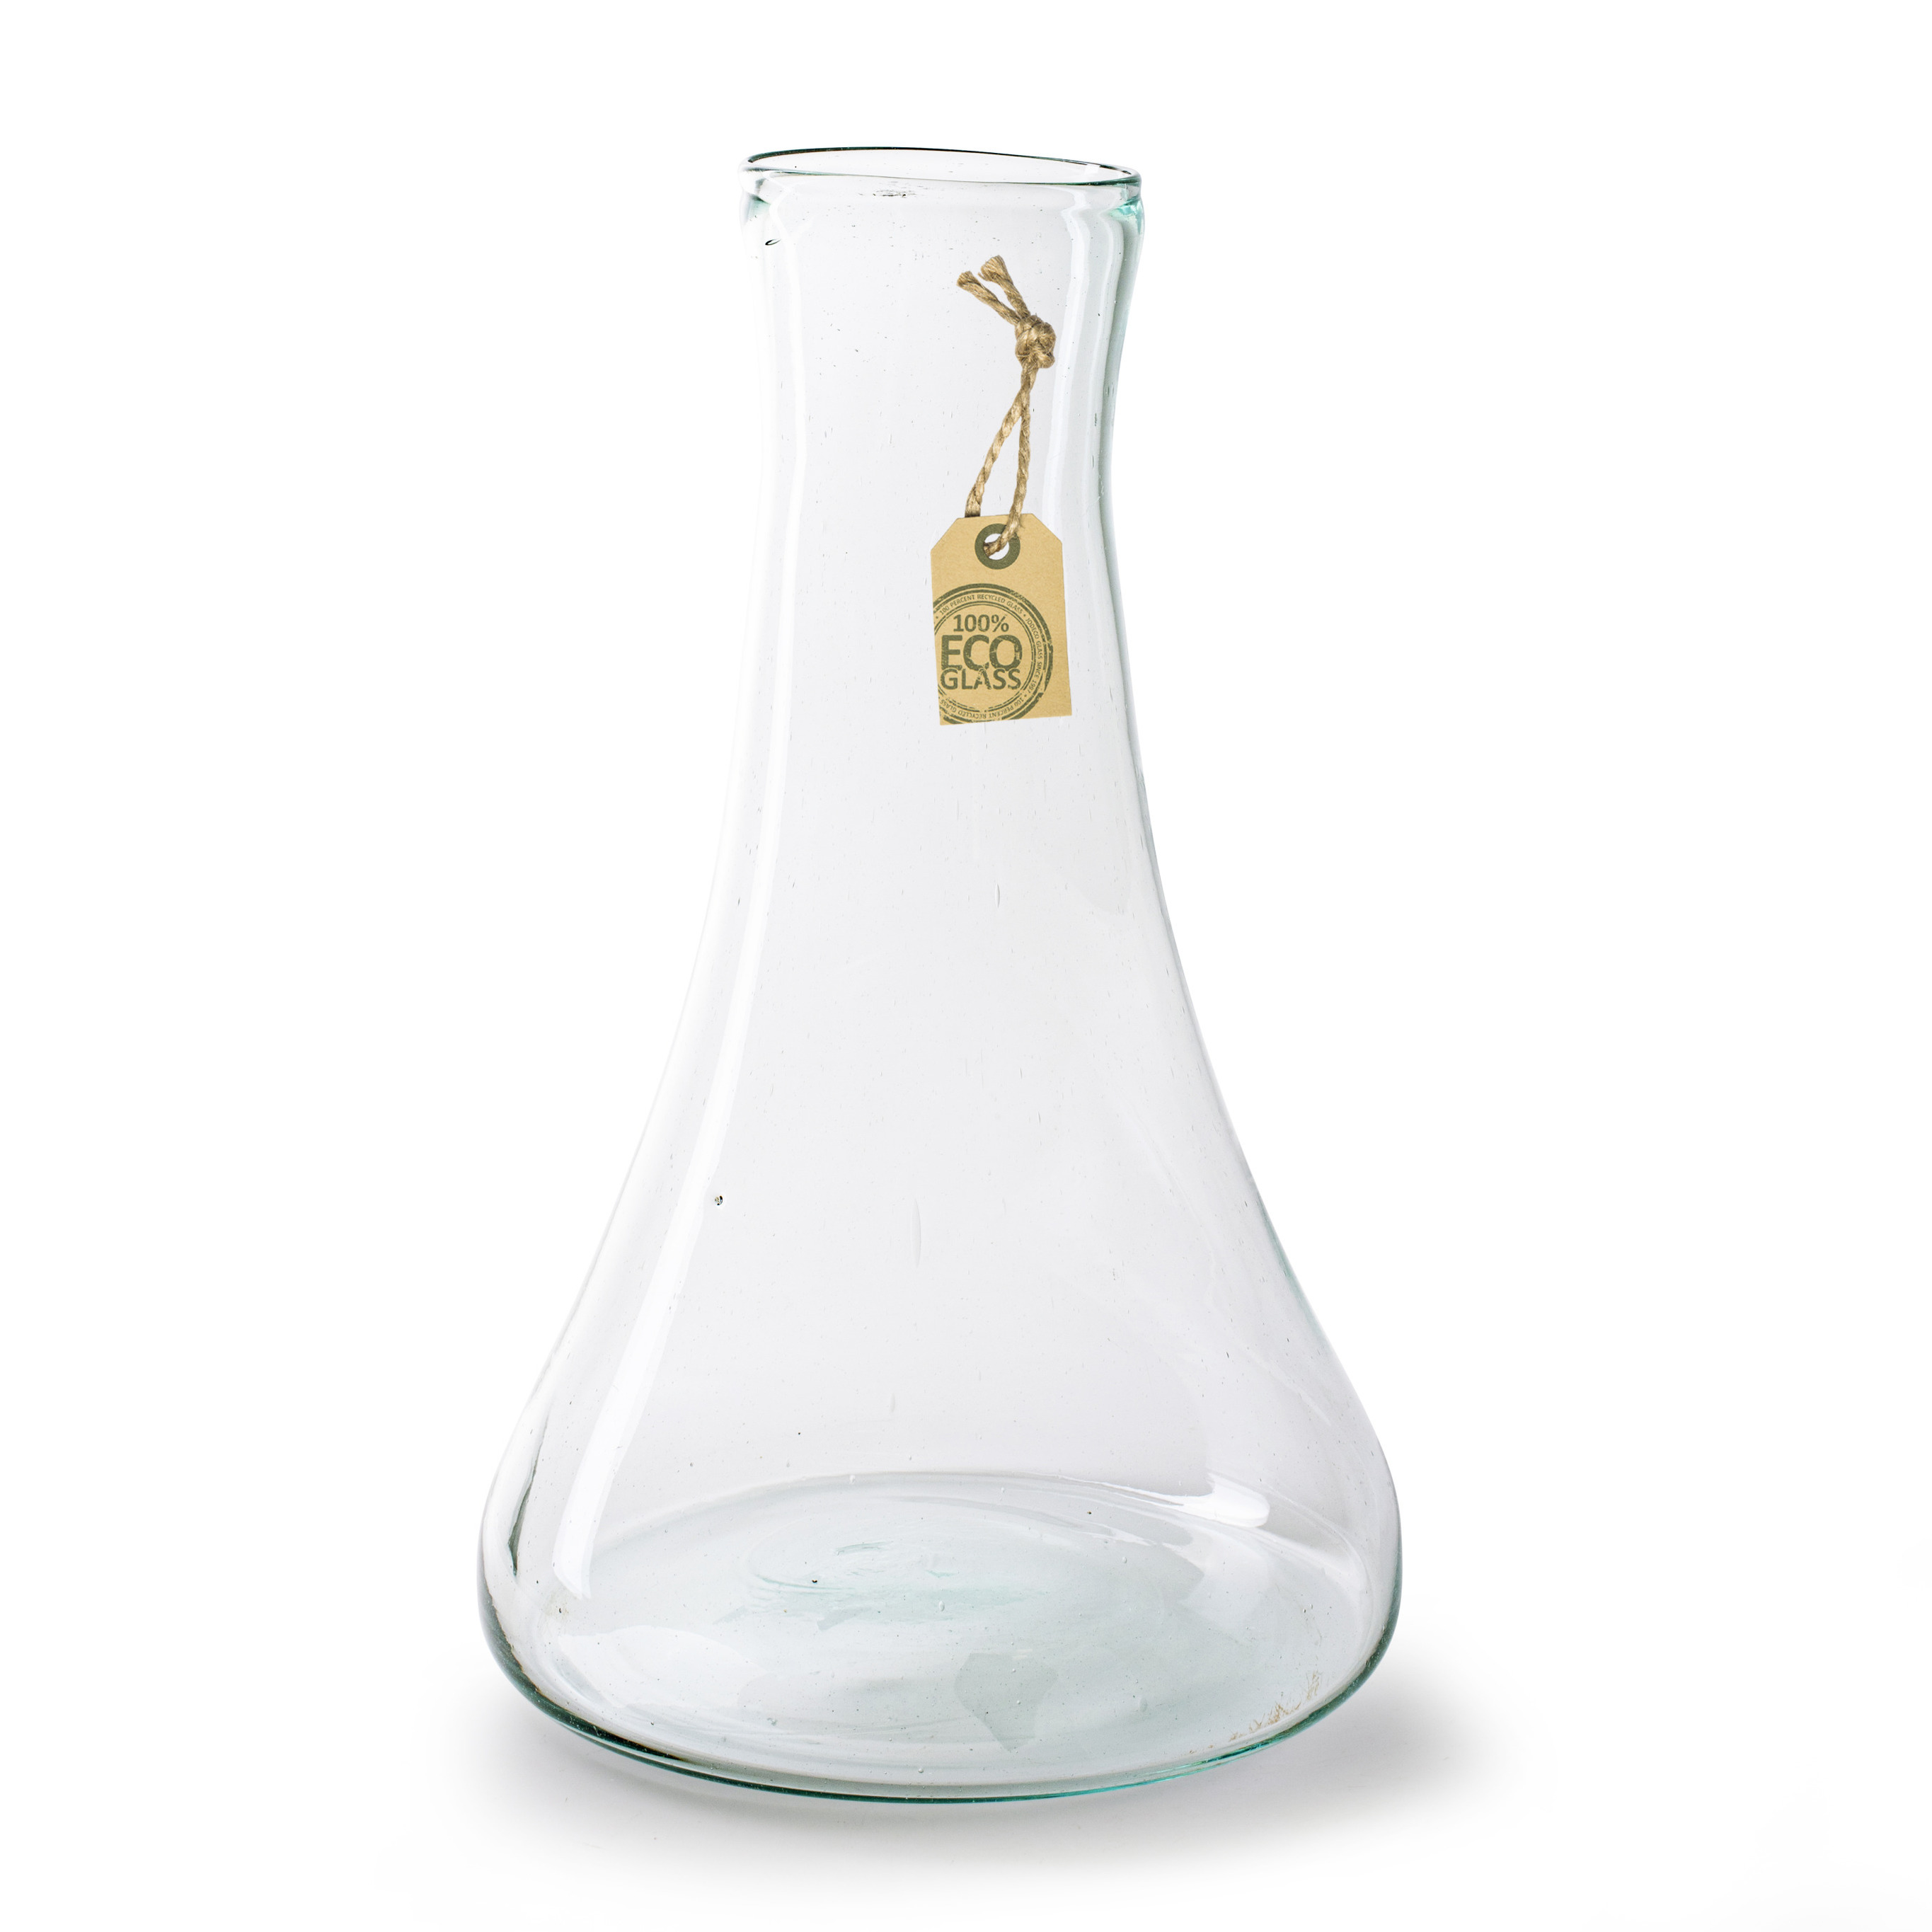 Transparante Eco vaas/vazen met hals van glas 40 x 25 cm